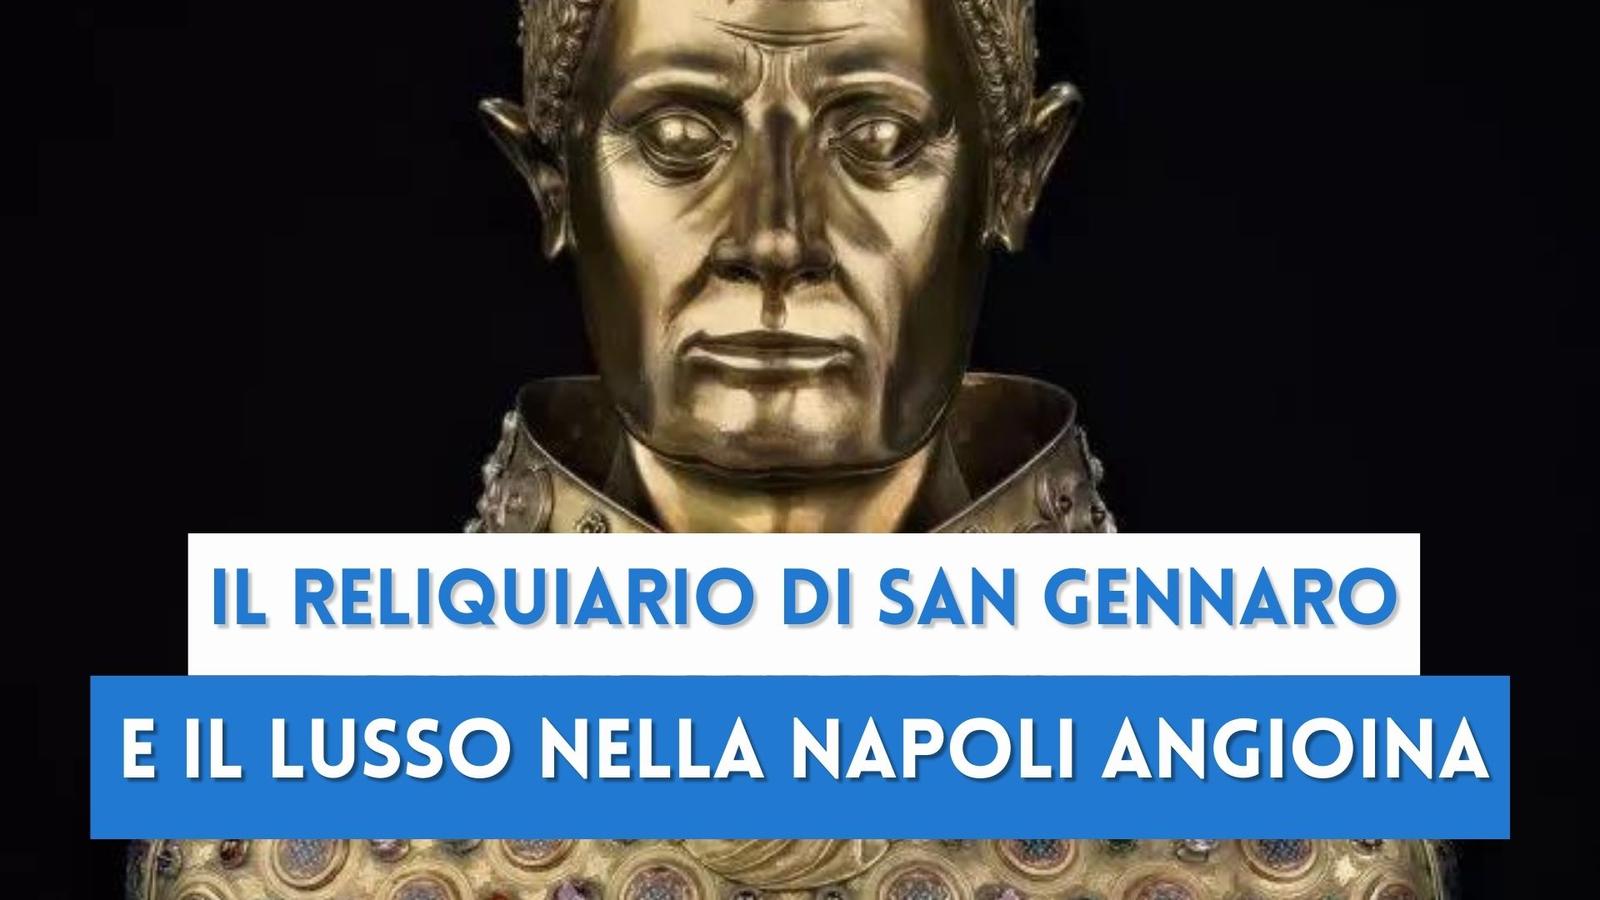 Il busto reliquiario di San Gennaro